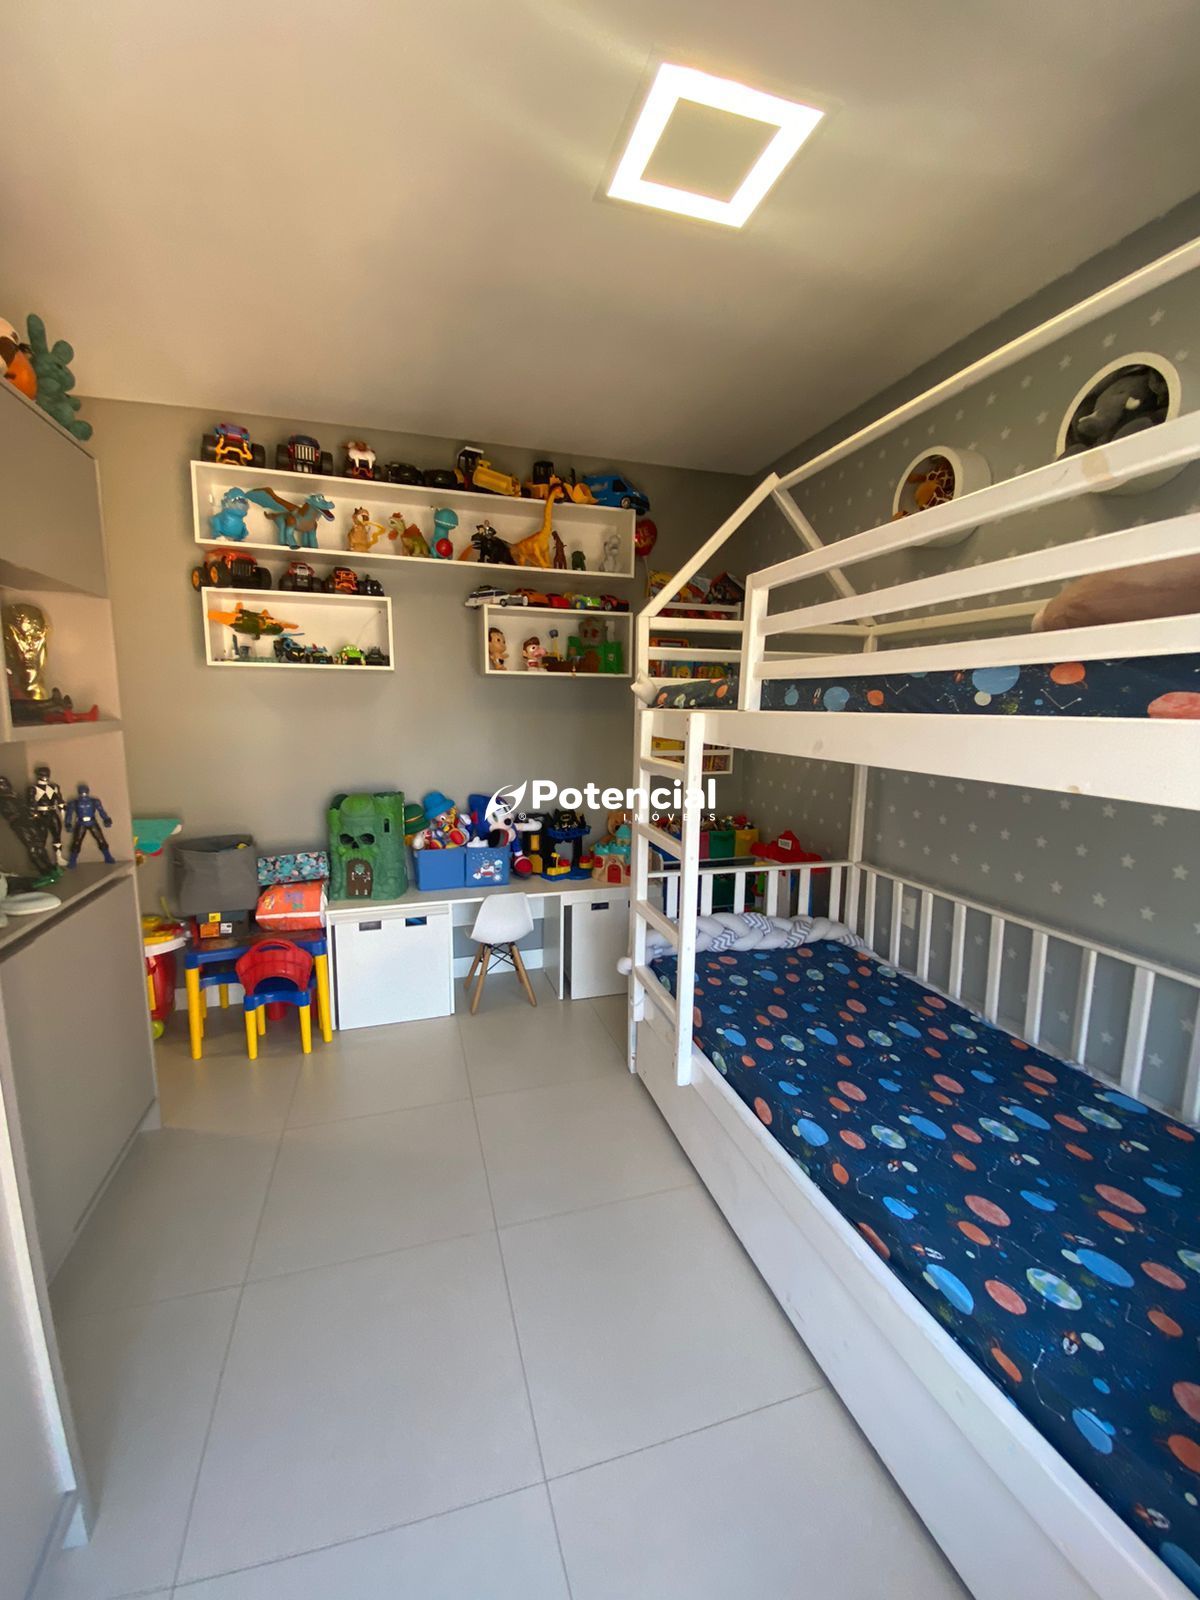 Imagem de Apartamento 03 Suítes Mobiliado | Meia Praia - Itapema / SC | Potencial Imóveis